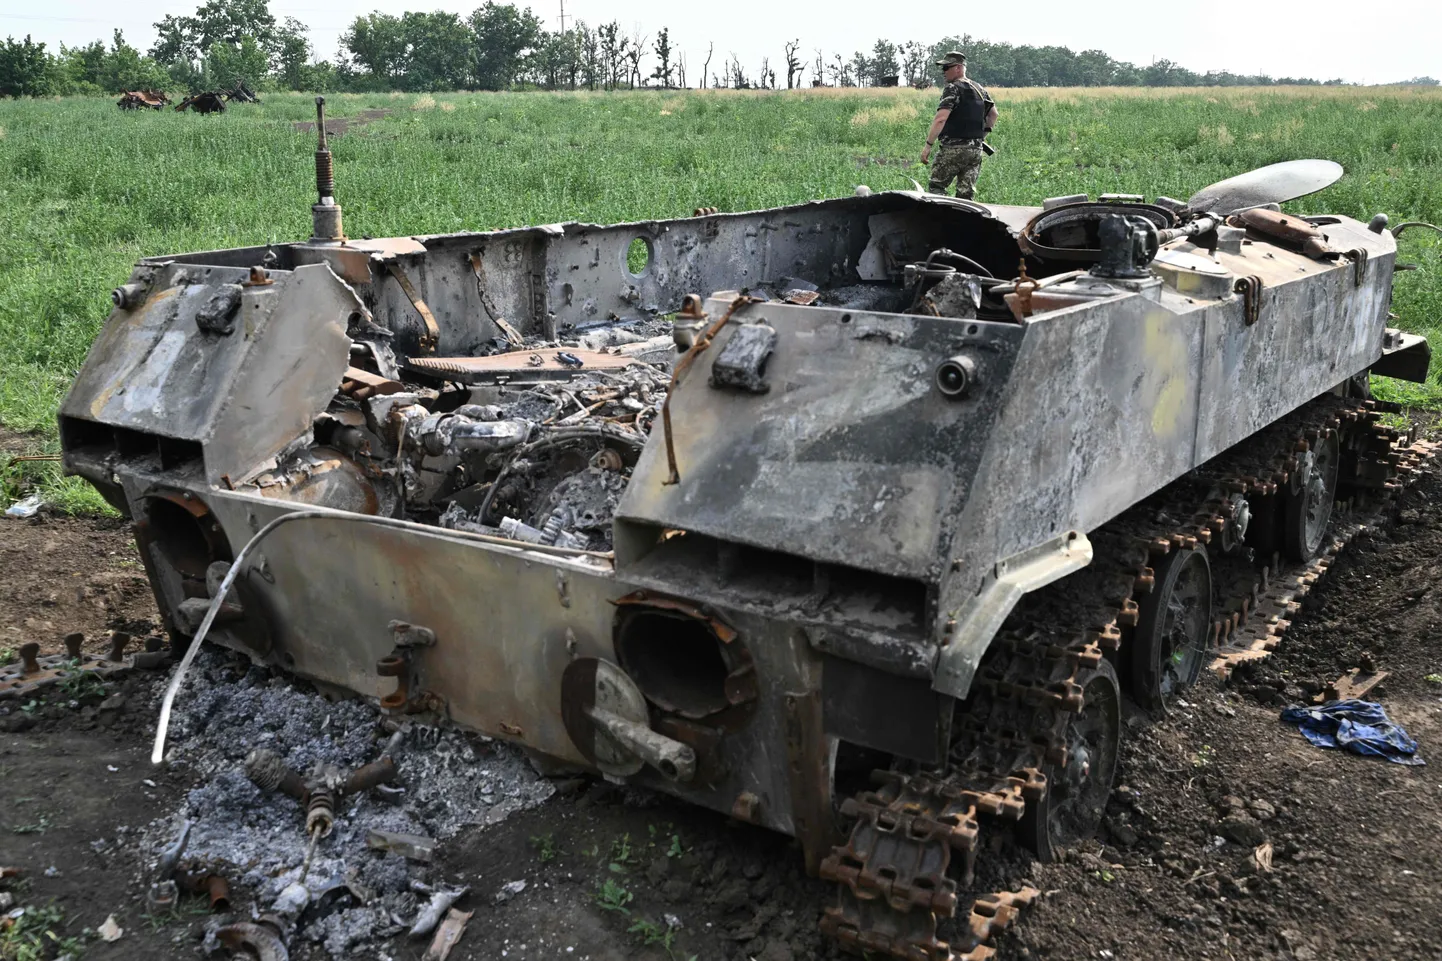 Украинский военнослужащий проходит мимо уничтоженной российской военной техники на поле недалеко от города Николаева 12 июня 2022 года.